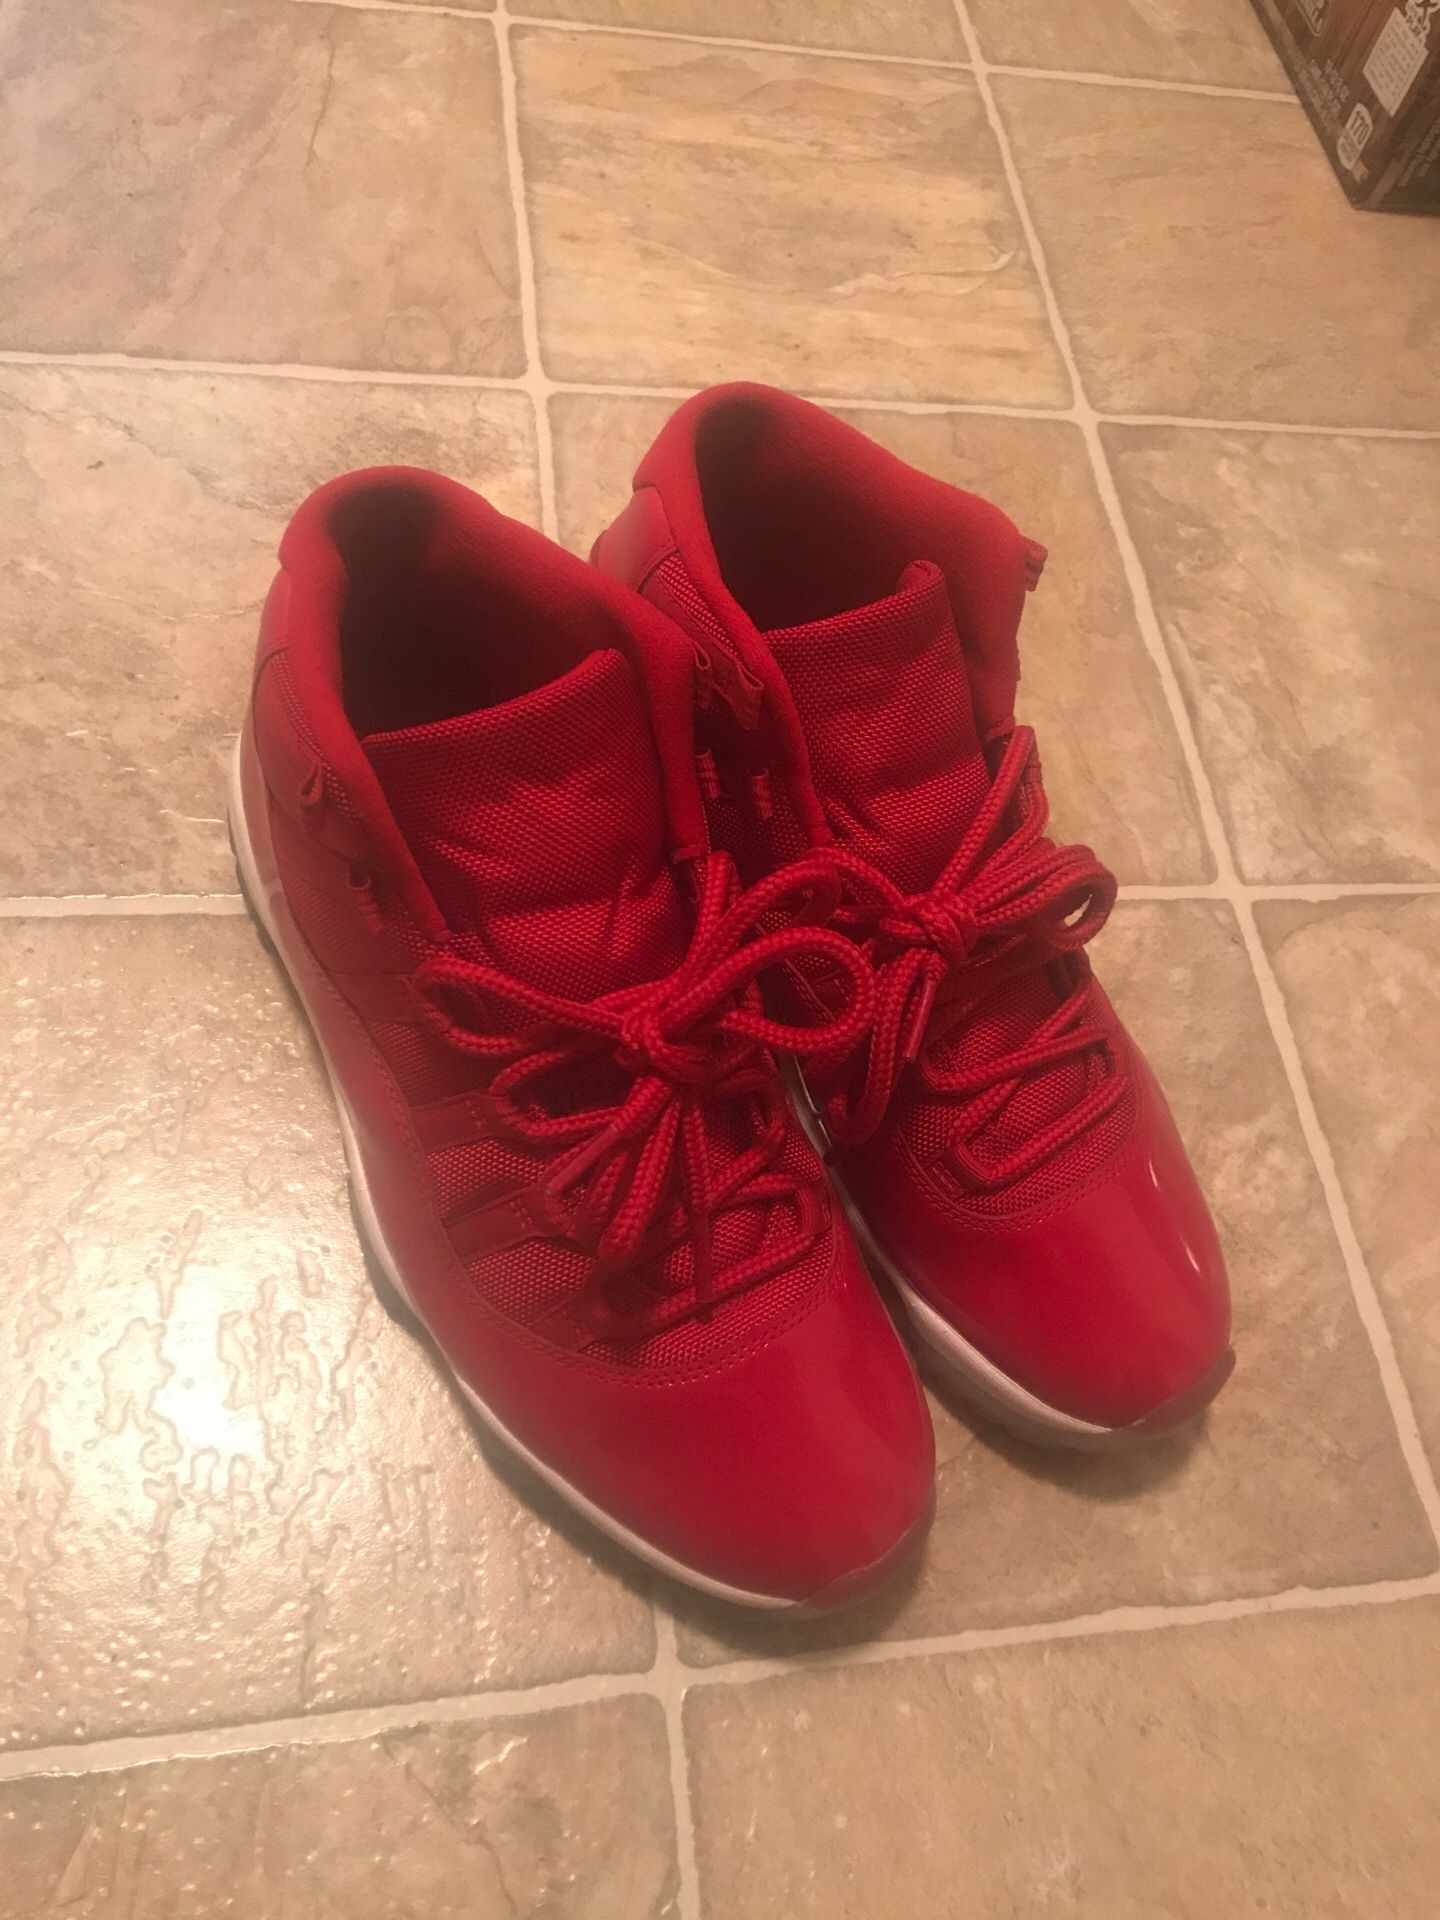 Jordan 11’s And Nike Foamsposites “”BOTH 10.5””